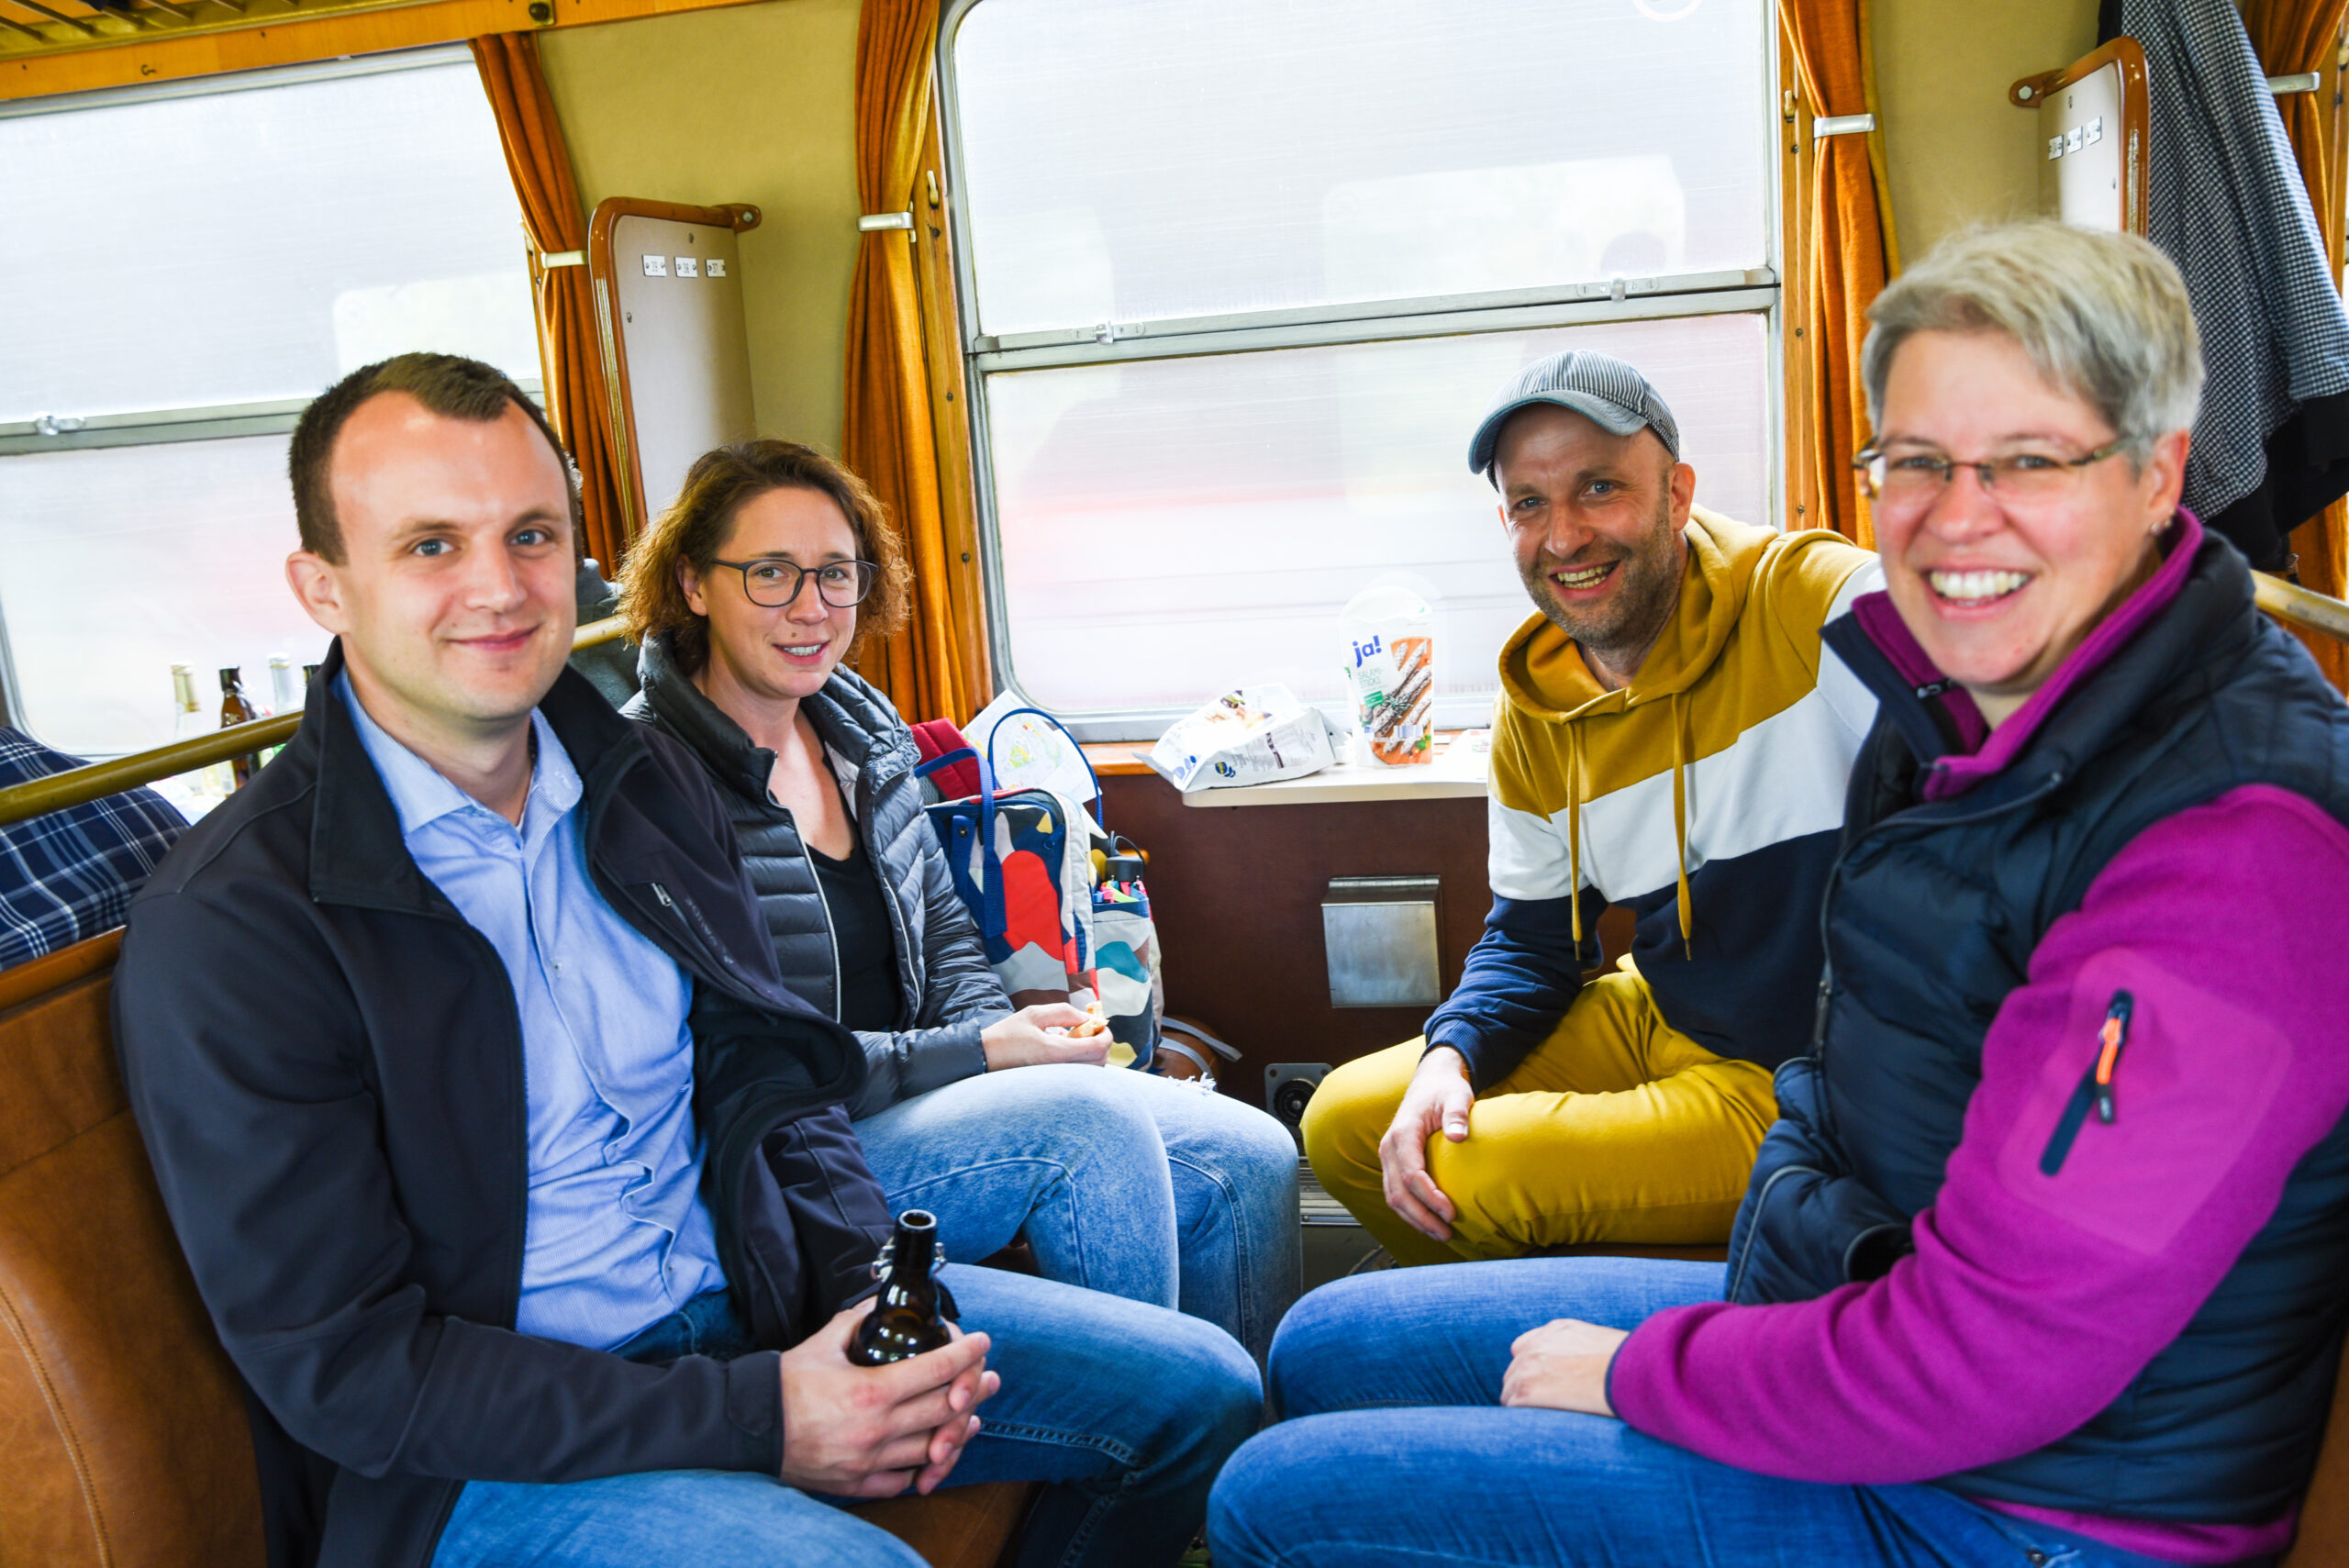 Eindrücke aus der Eisenbahn: Gute Gespräche und Miteinander